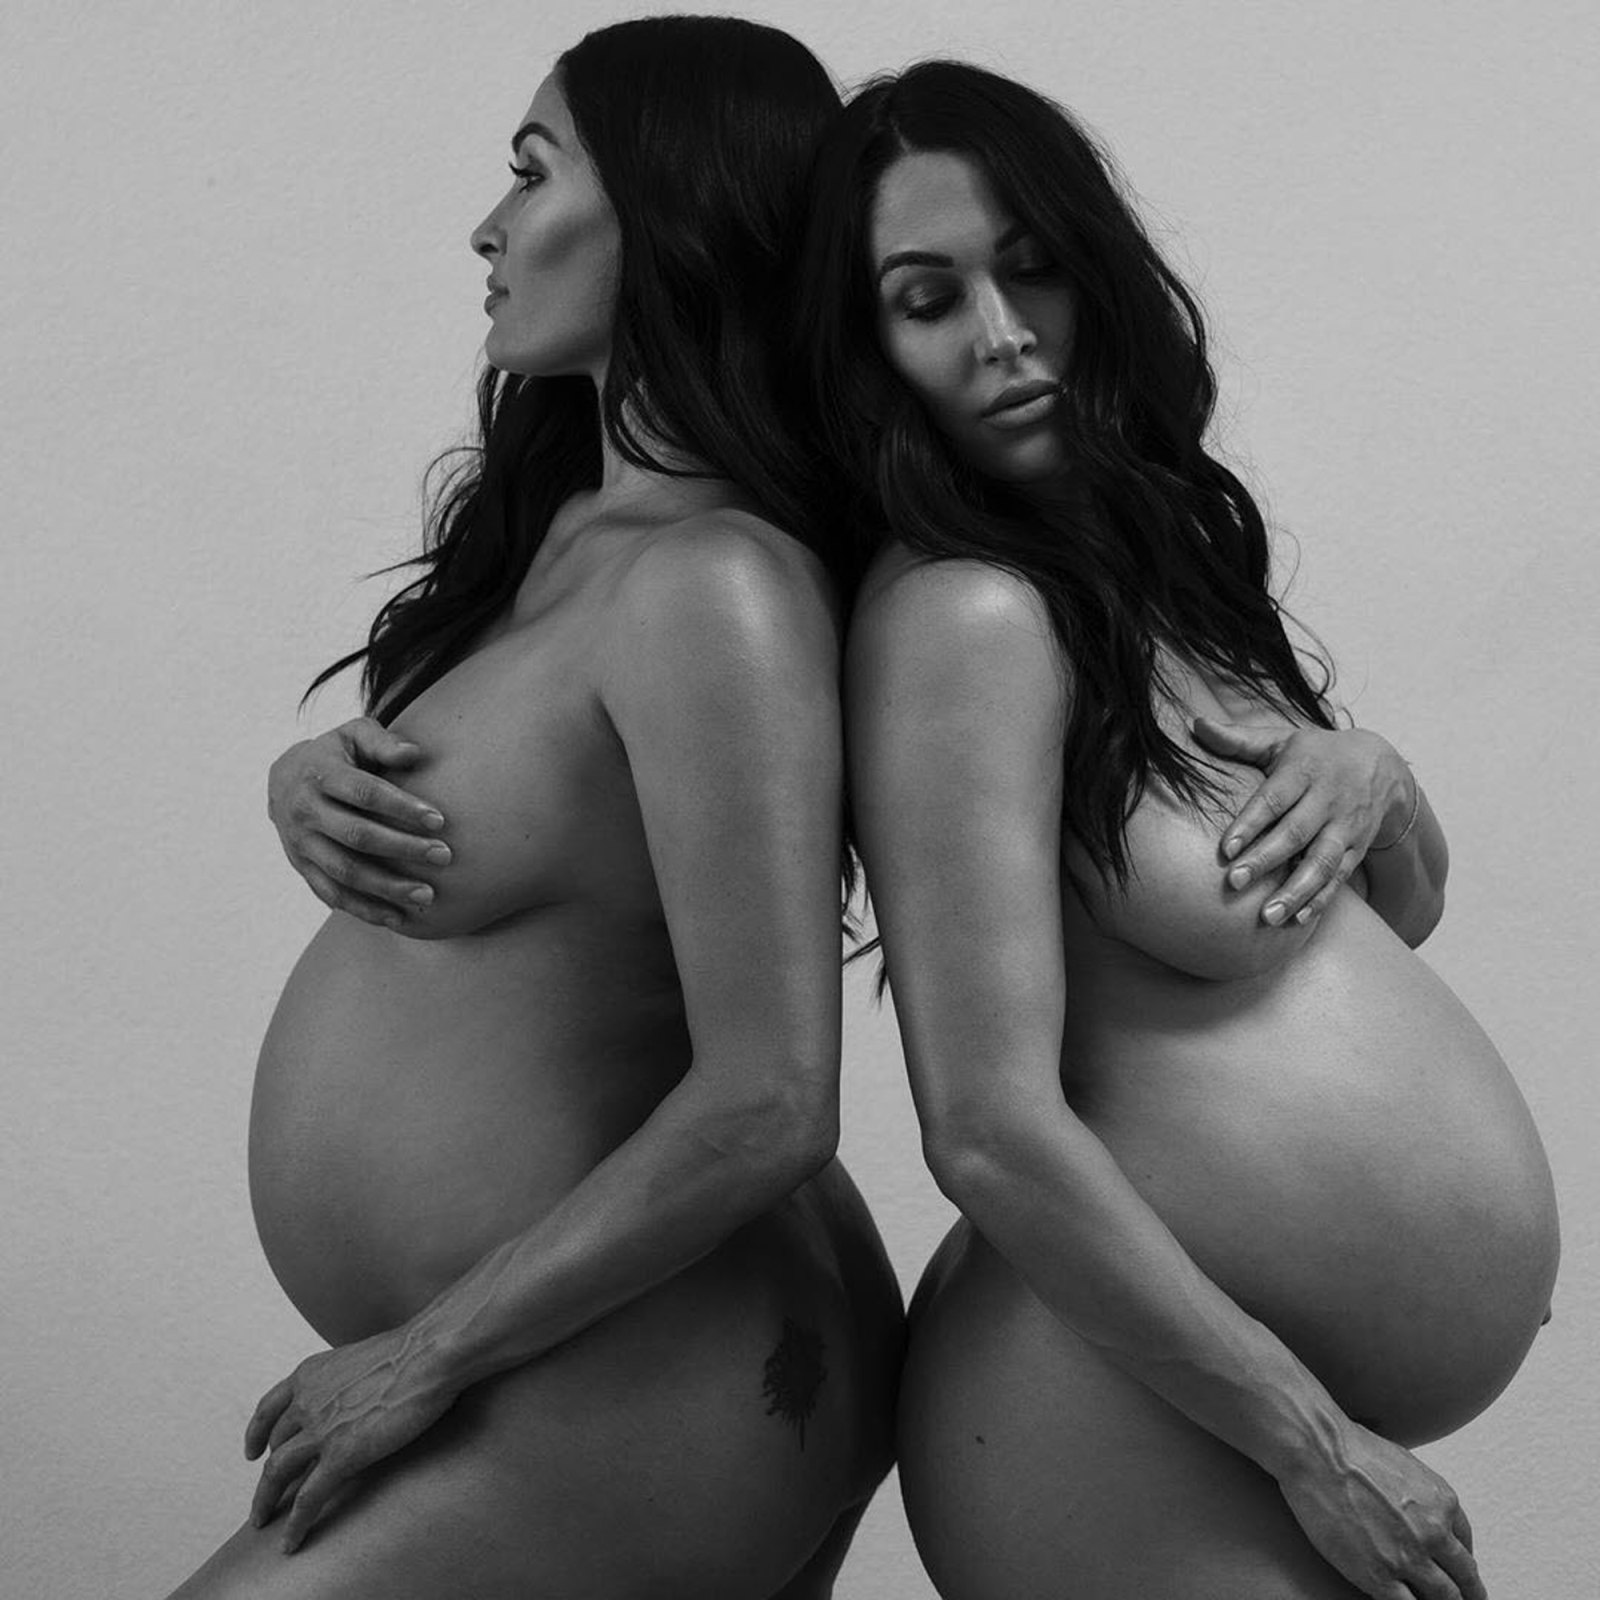 Free Unique Sexy Pregnant Nudes - Pregnant Nikki, Brie Bella Pose Nude Ahead of Birth: Baby Bump Pics